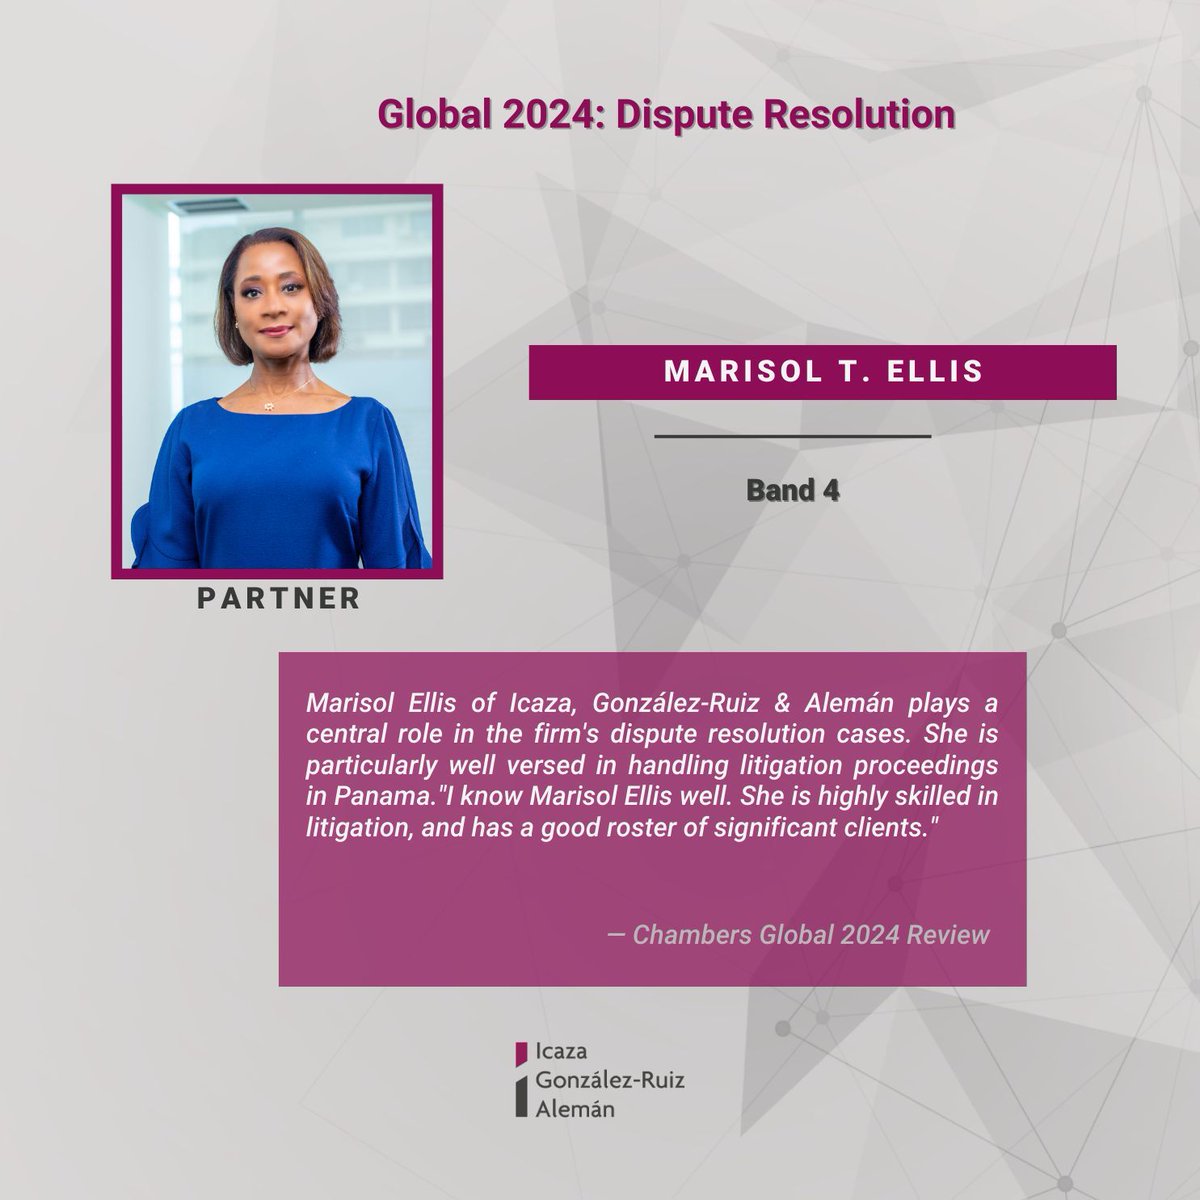 Nos complace compartir que nuestra socia Marisol Ellis del departamento de Resolución de Conflictos ha sido distinguida nuevamente por su excelencia profesional por Chambers Global 2024.

#Icazalaw #ChambersGlobal2024 #DisputeResolution #ADR